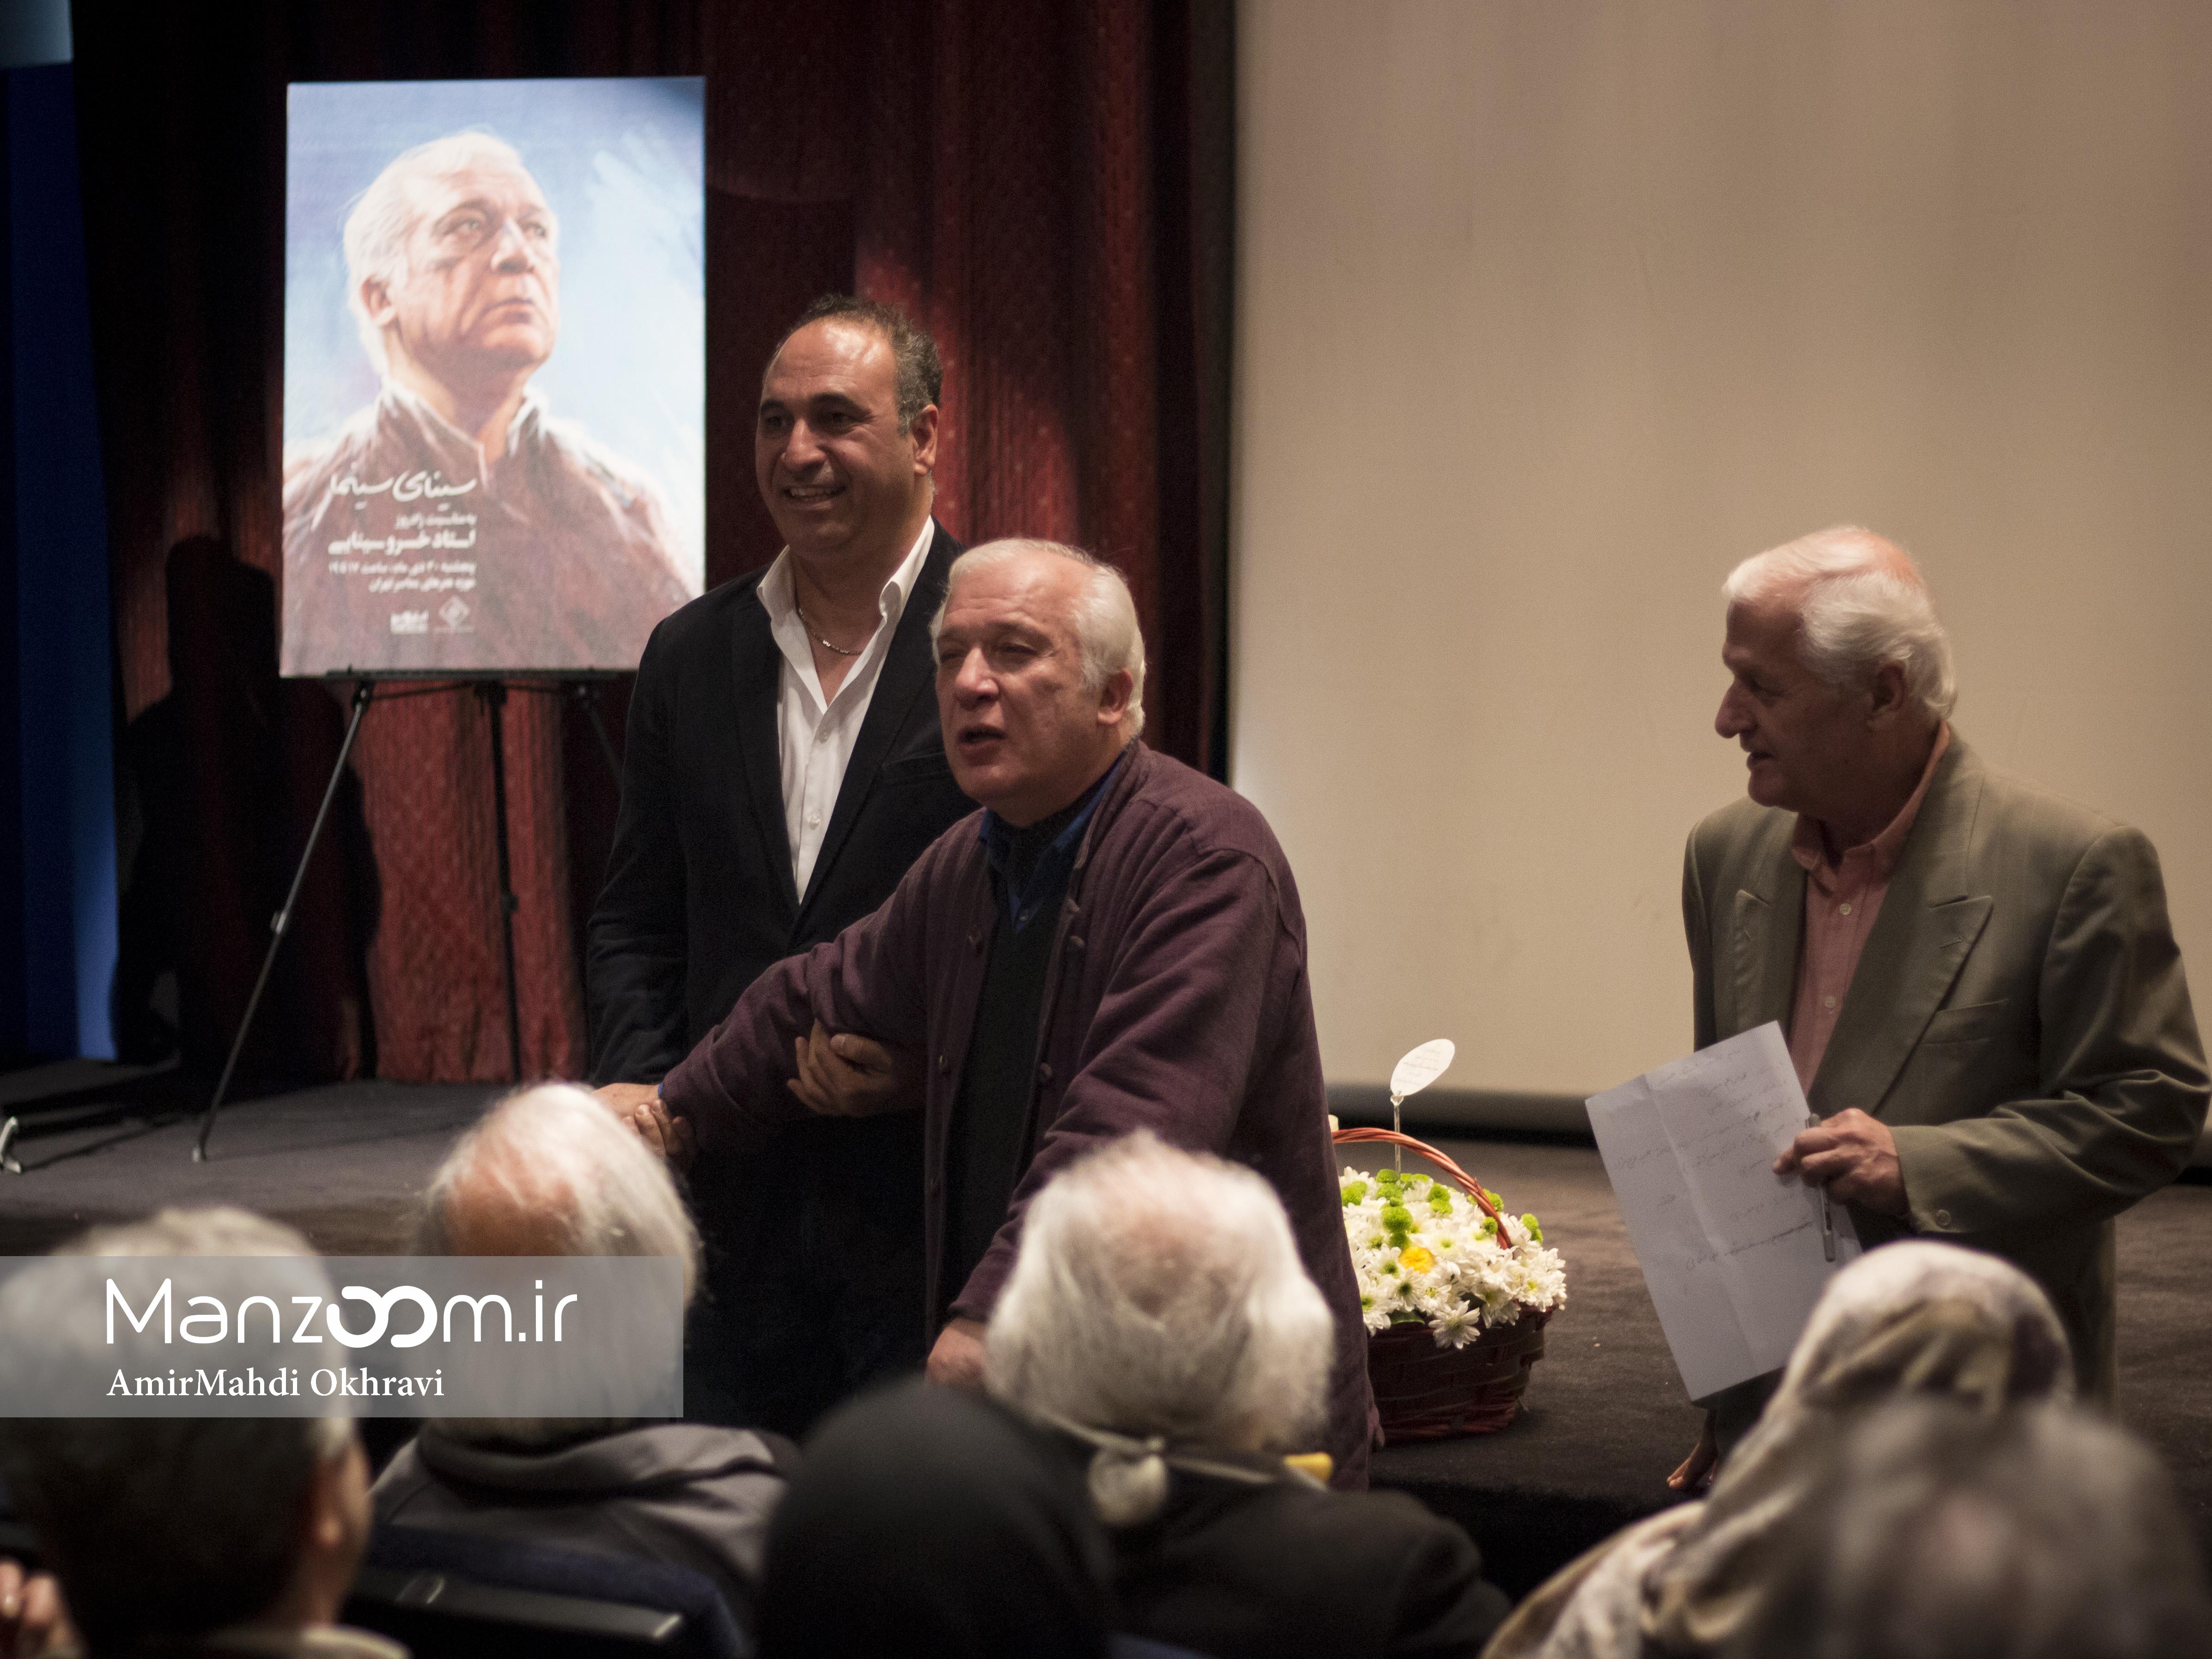 حمید فرخ‌نژاد، بازیگر و نویسنده سینما و تلویزیون - عکس مراسم خبری به همراه اکبرعالمی